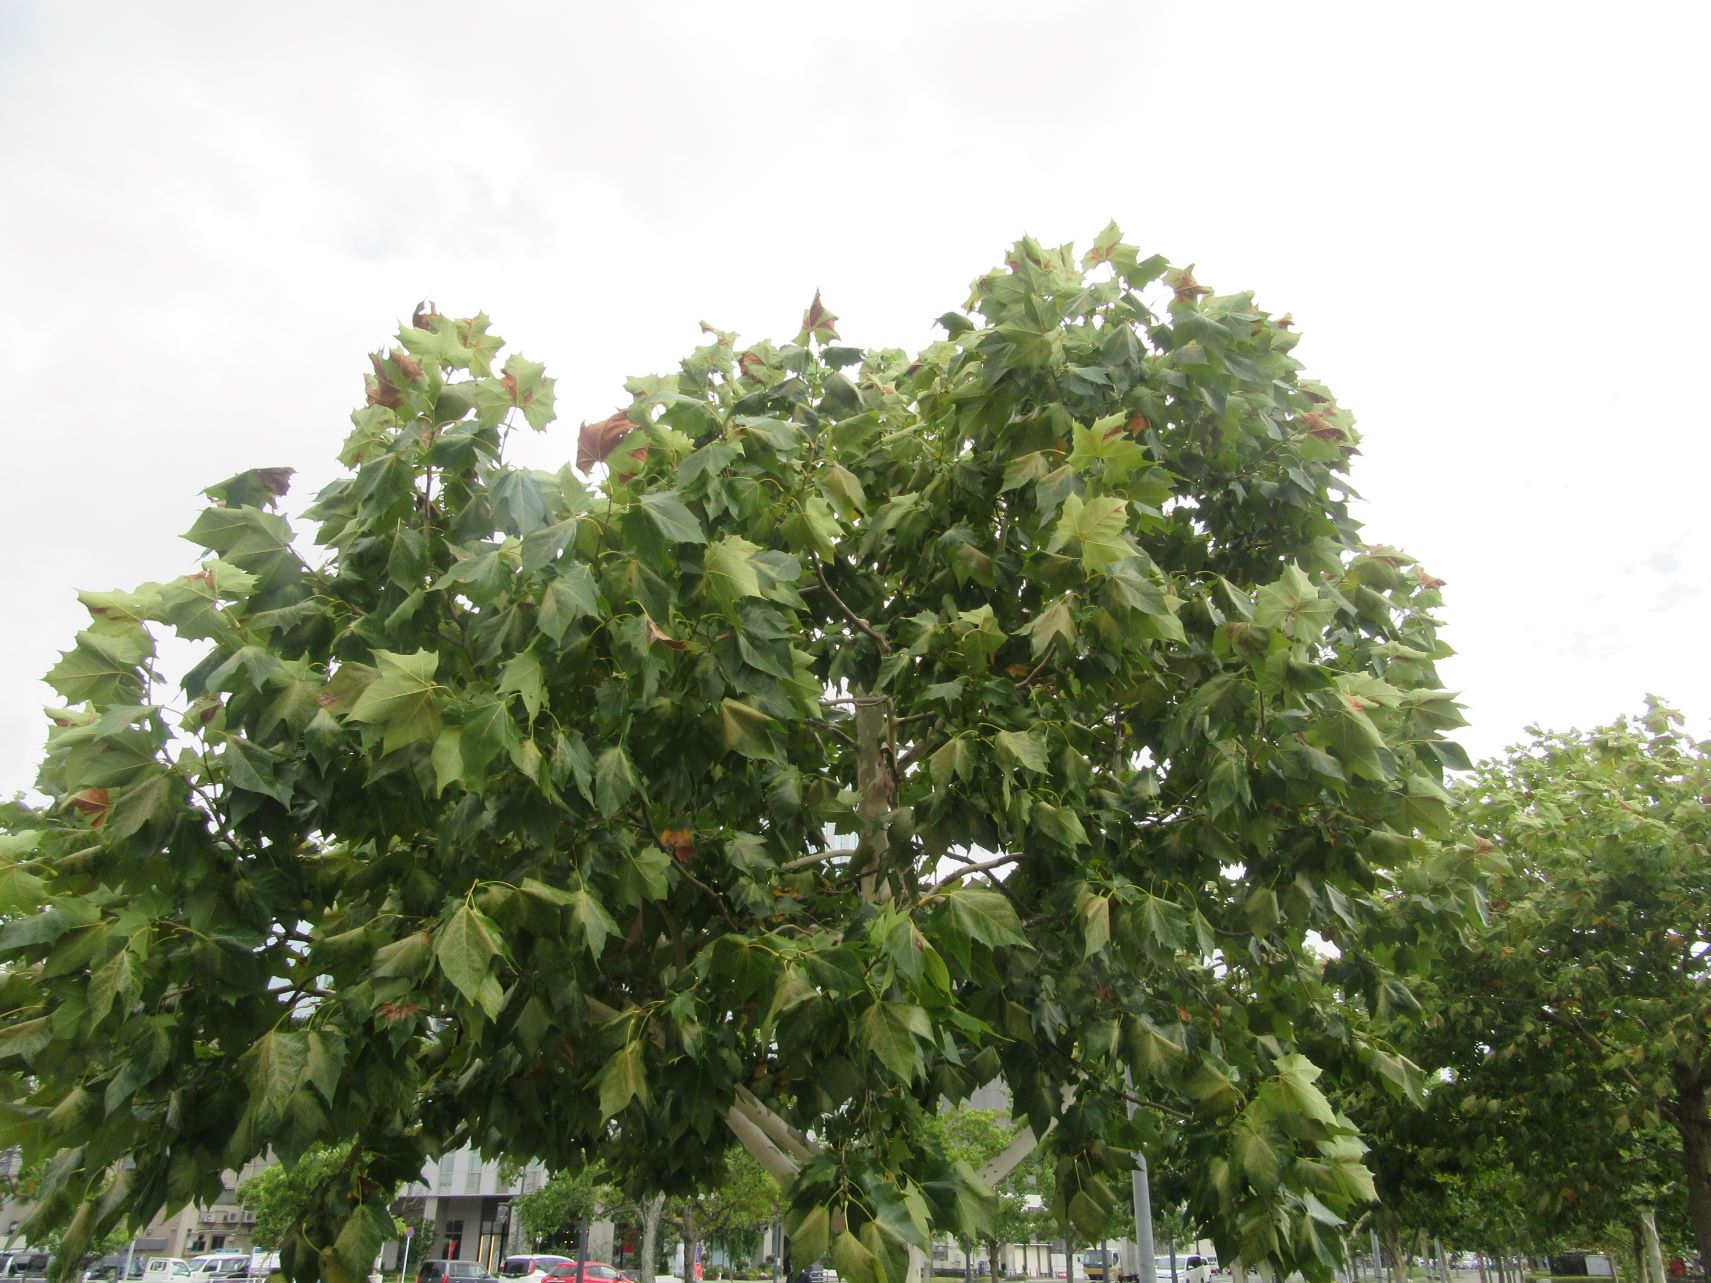 2023年9月5日撮影の、長崎市のプラタナス広場の、枯葉混じりのプラタナスの木。